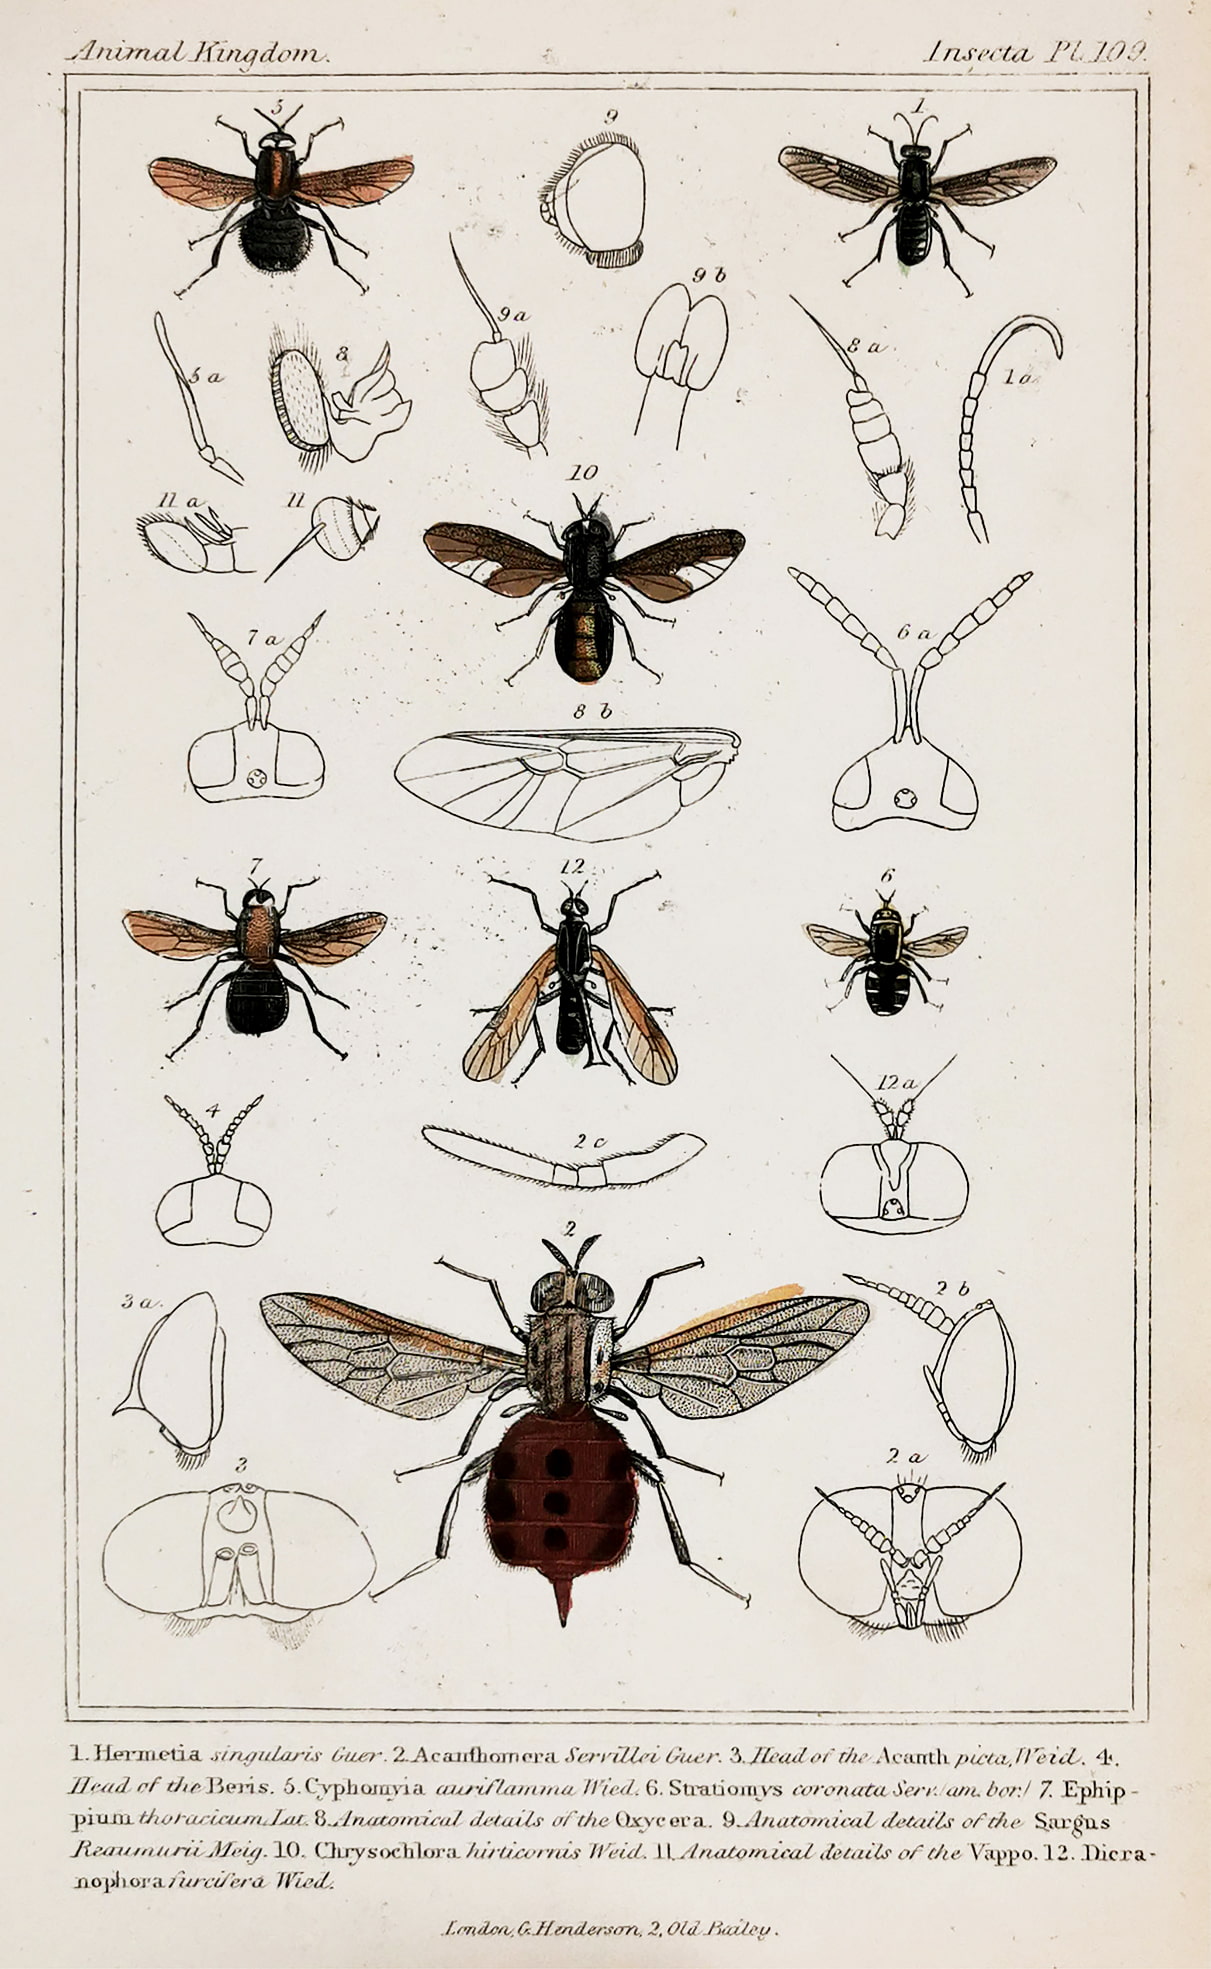 1. Hermetia singularis Guer 2. Acanthomera Servillei Guer. - Antique Print from 1827